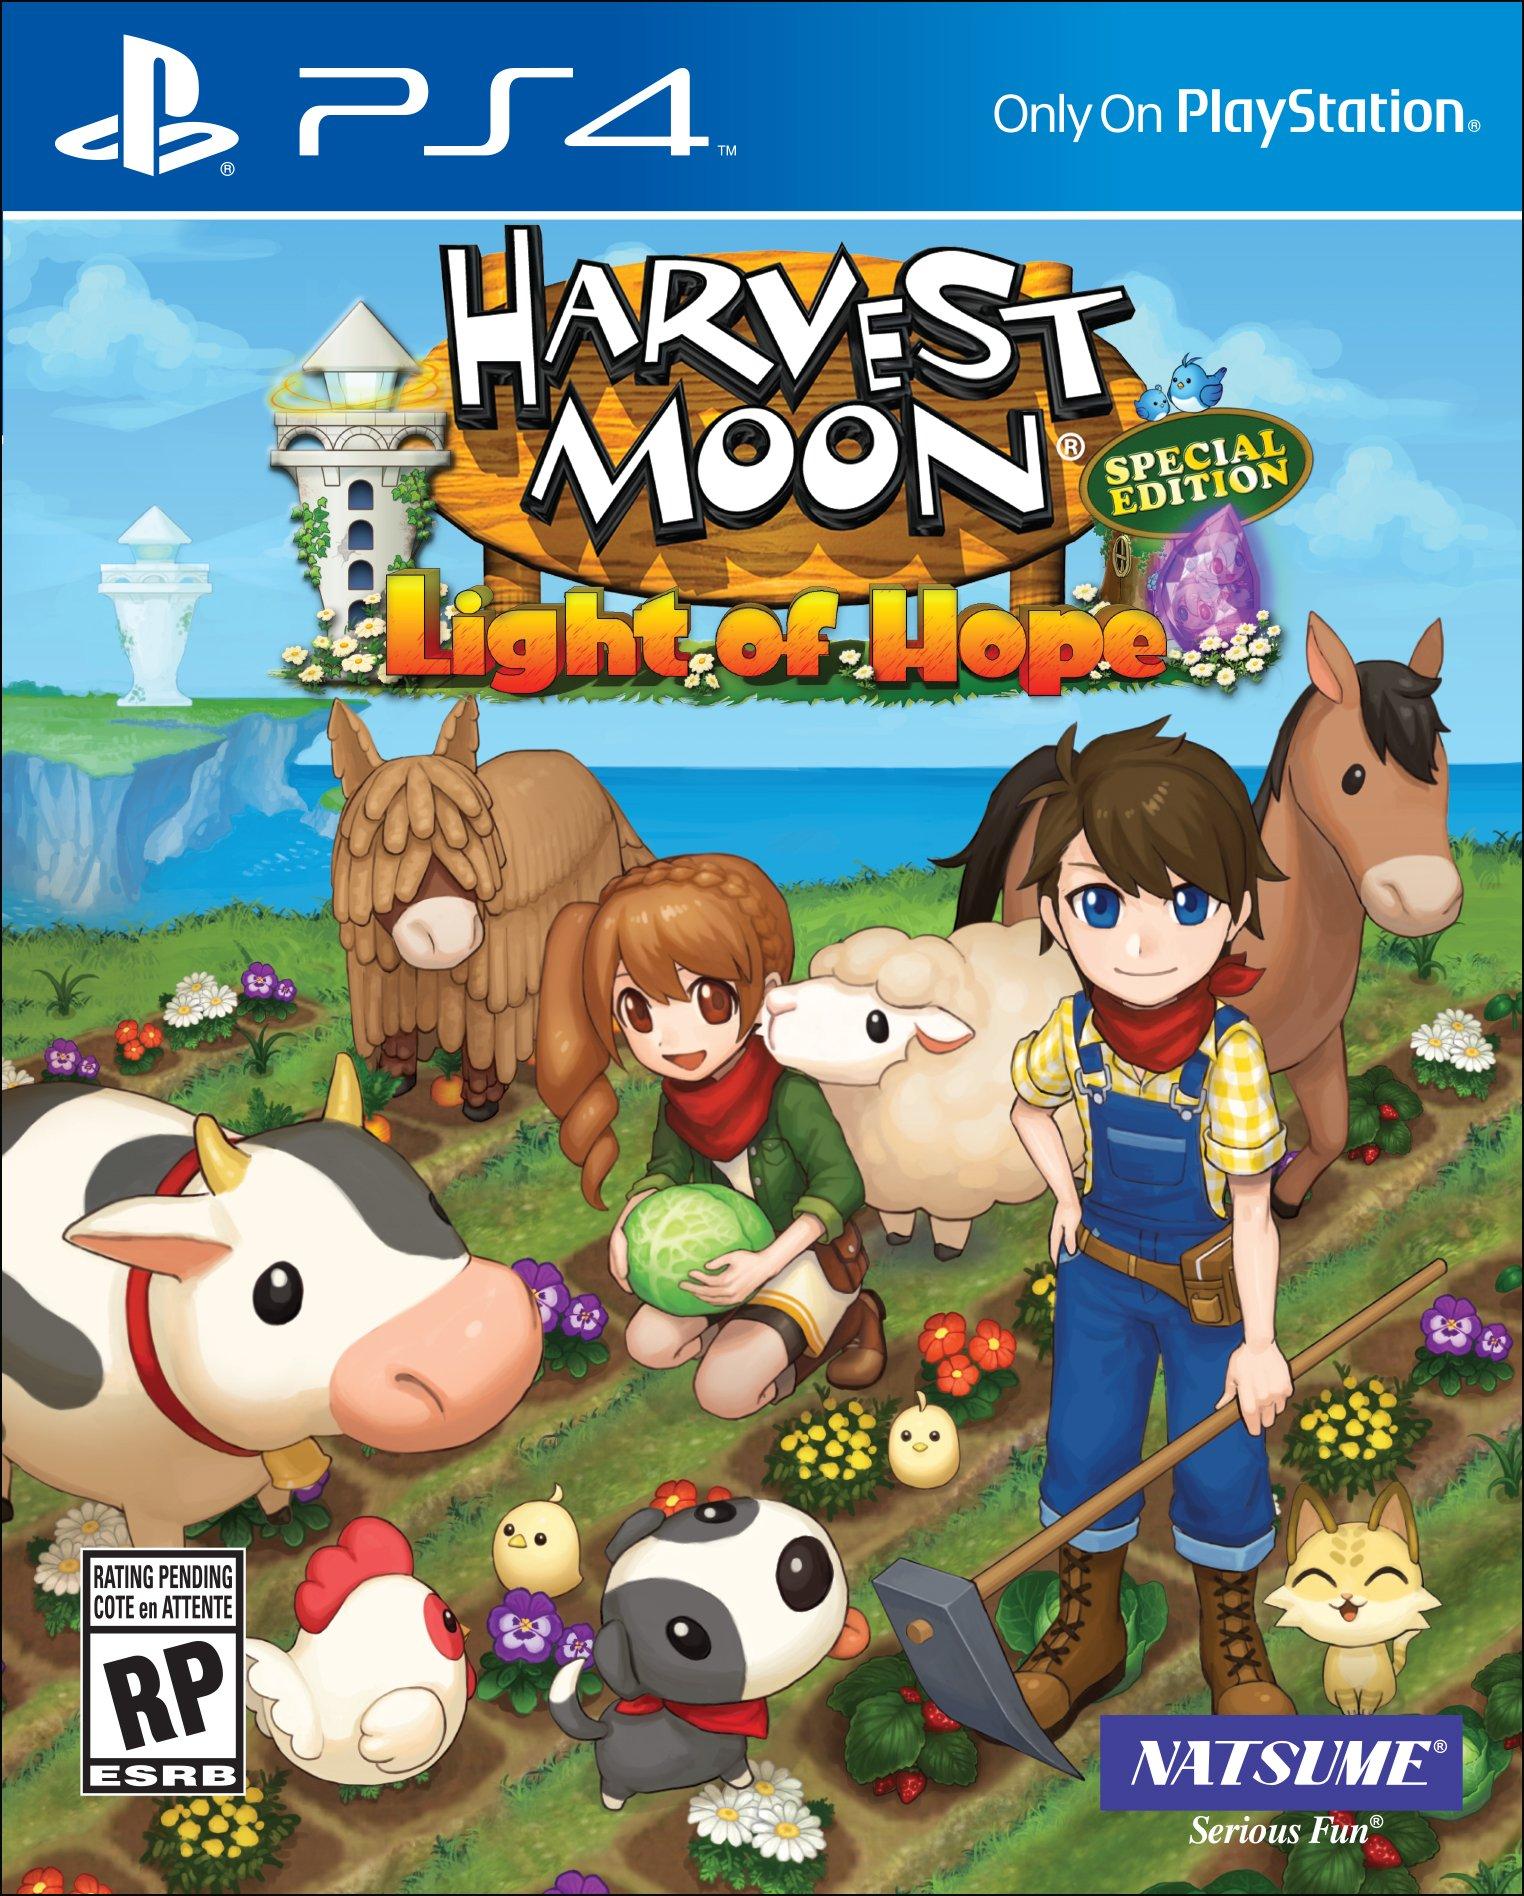 https://media.gamestop.com/i/gamestop/10159128/Harvest-Moon-Light-of-Hope-Special-Edition?$pdp$